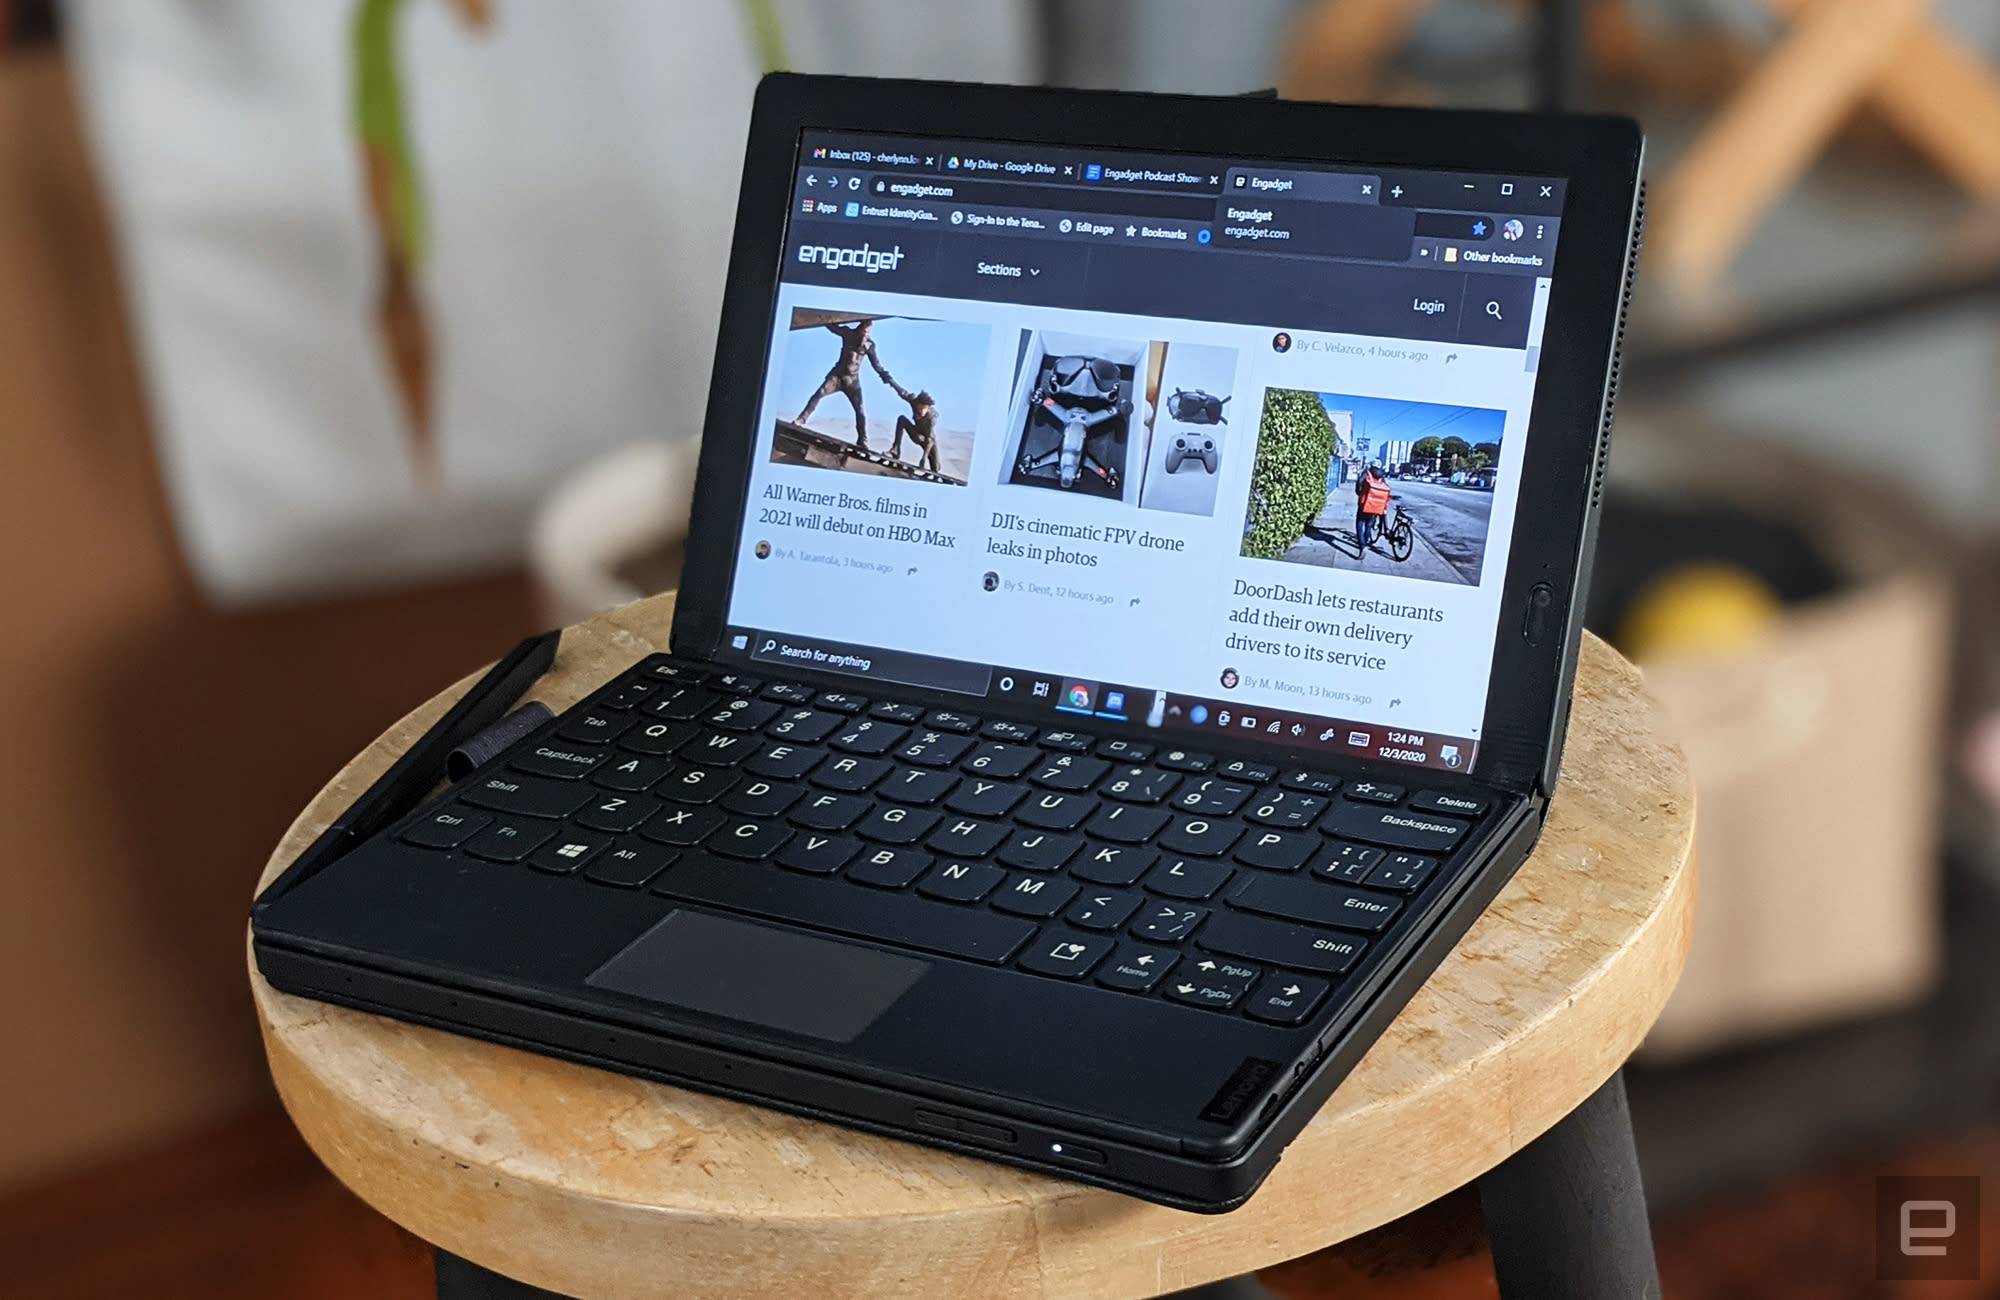 HP bringt das dünnste Notebook mit Funktionen auf den Markt, die bei der Konkurrenz nicht zu finden sind - 2 7